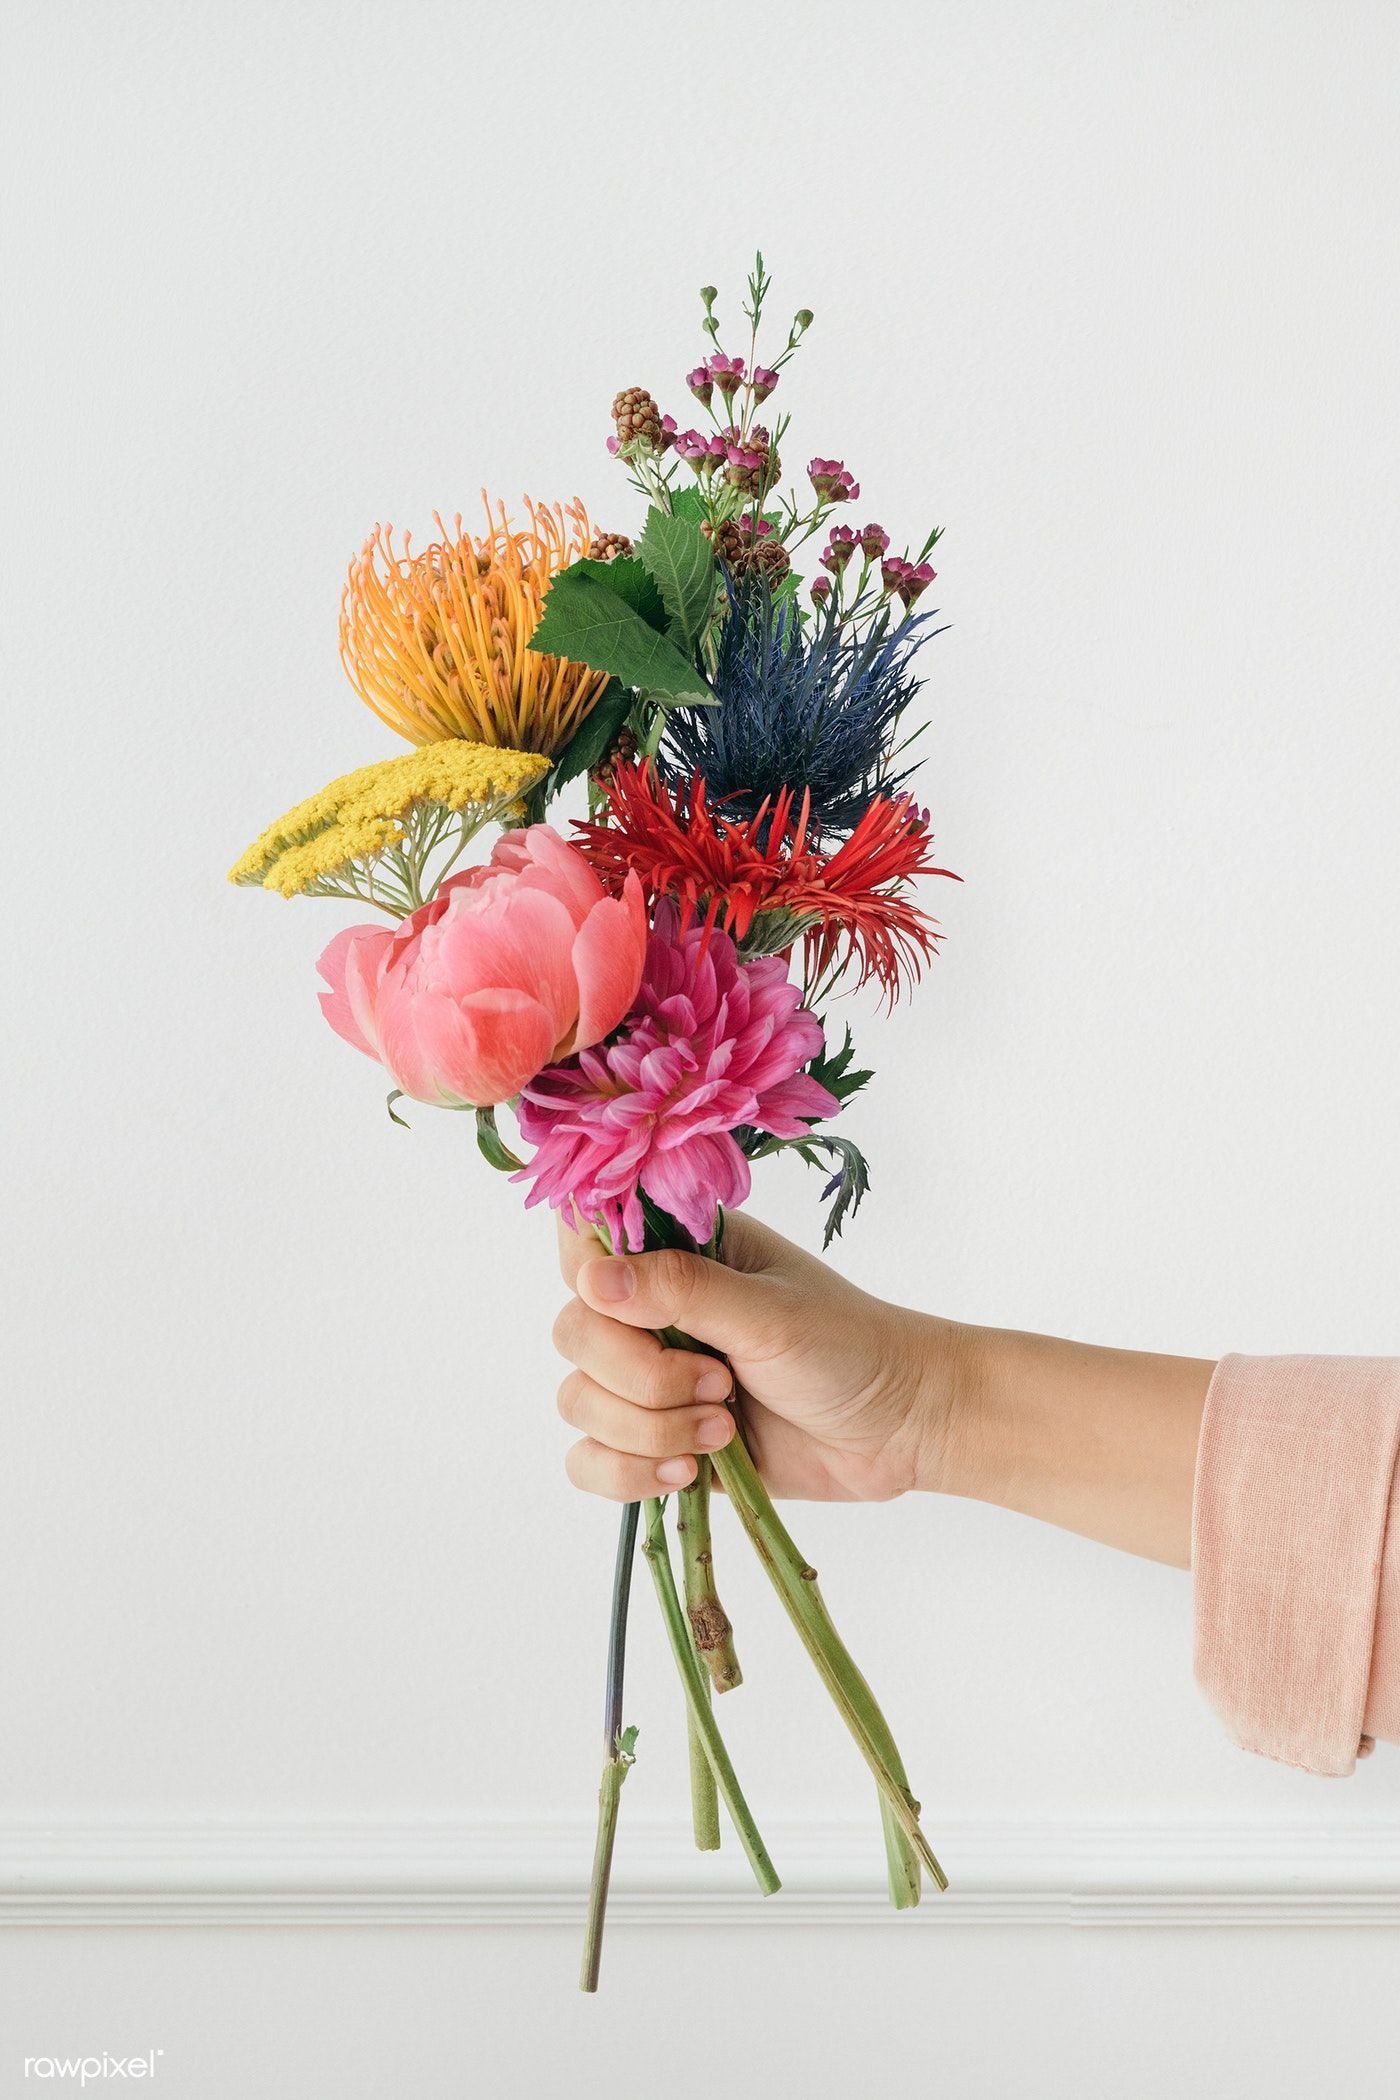 16 beauty Flowers bouquet ideas